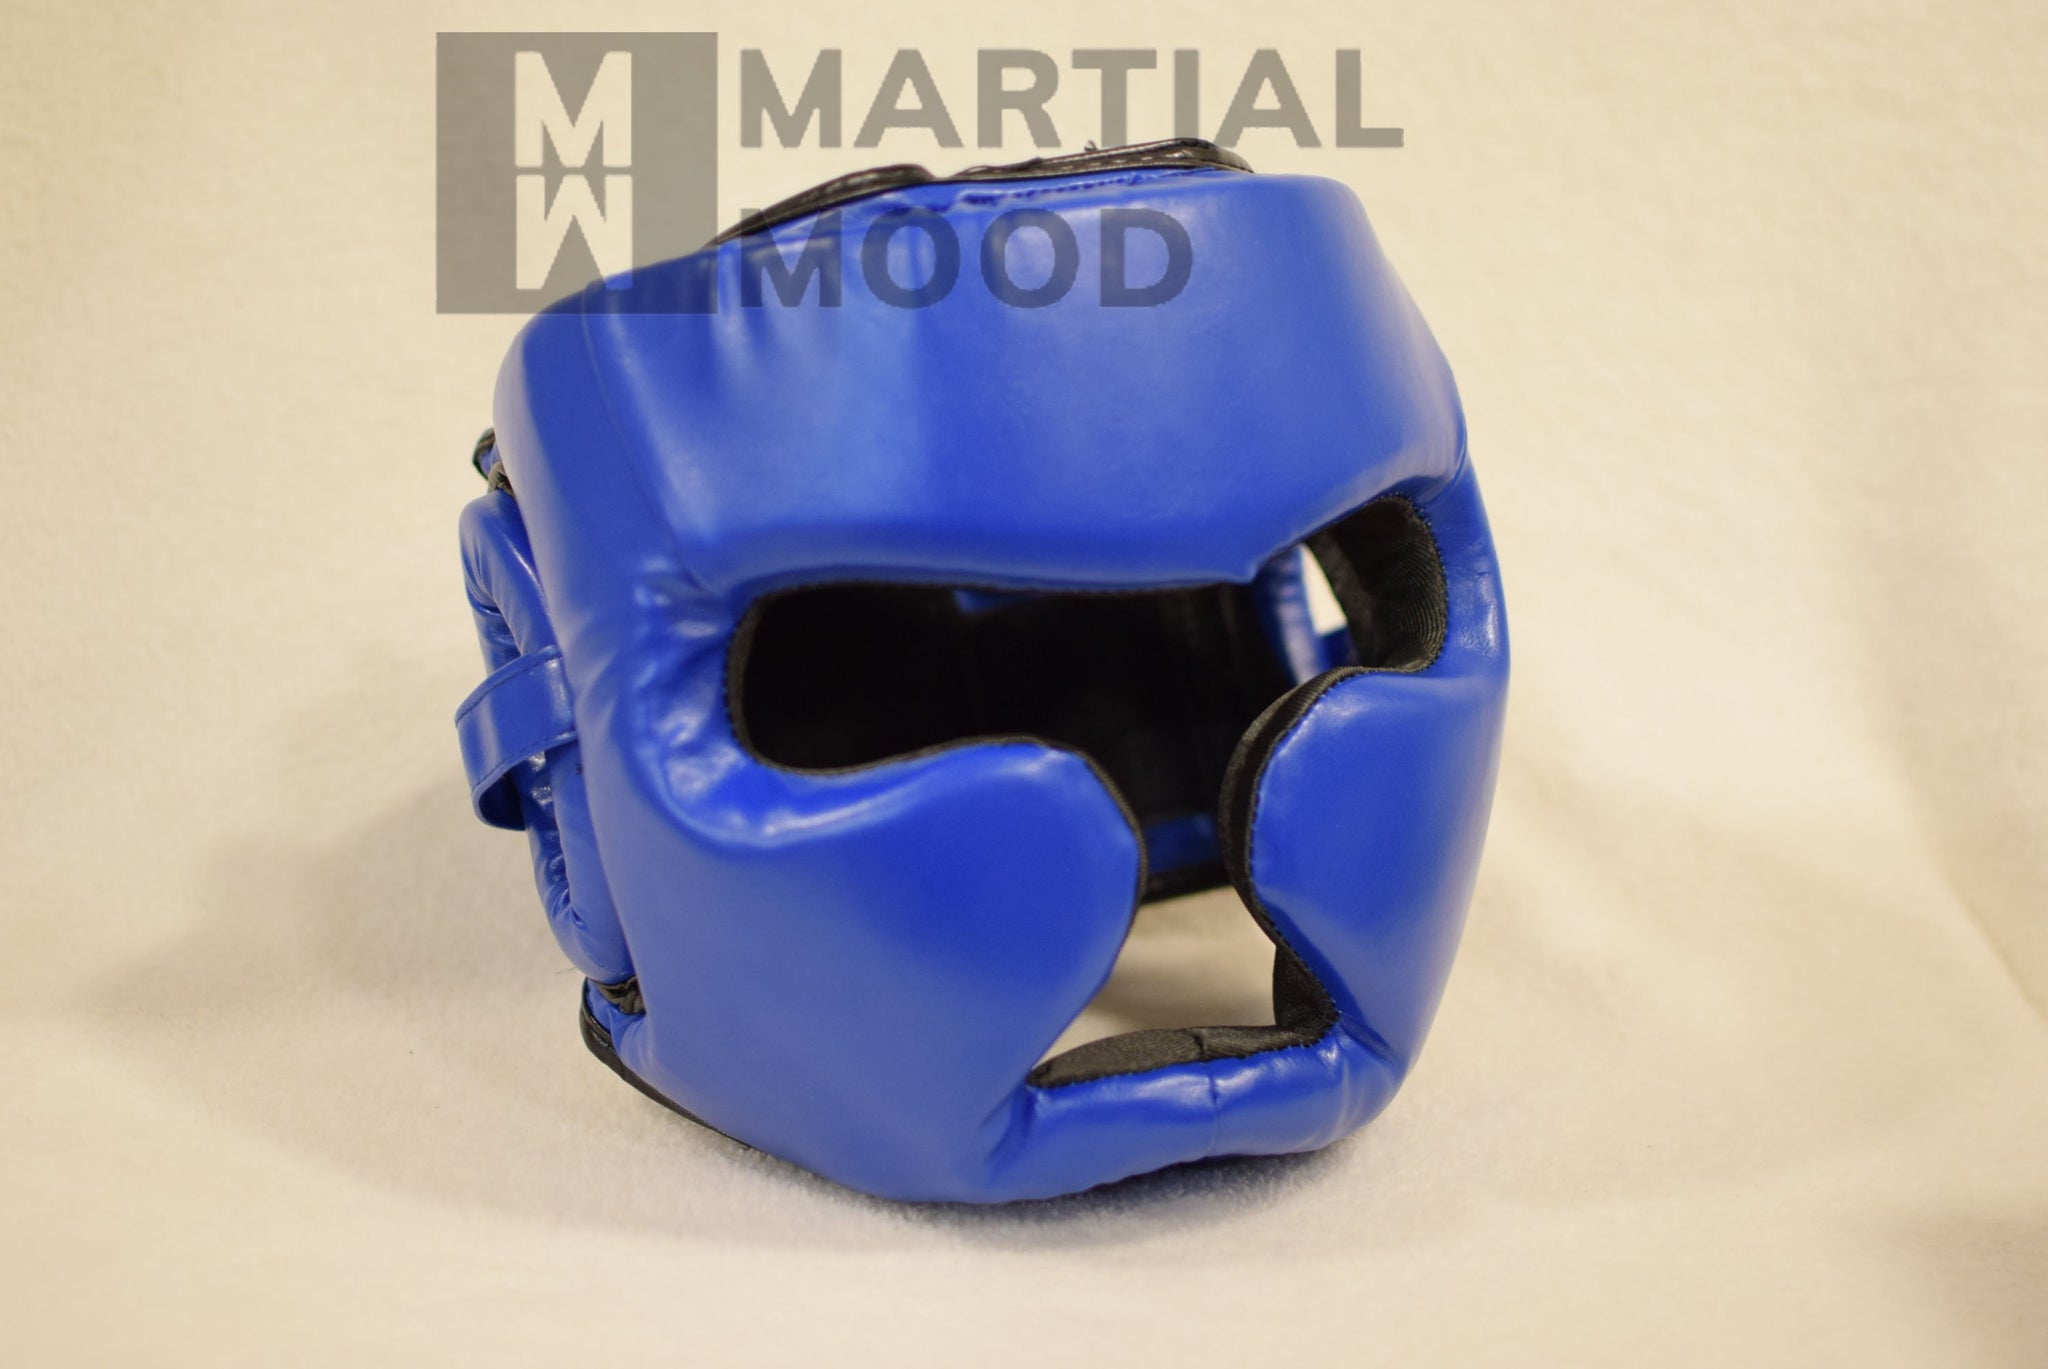 Casque de boxe – martialmood